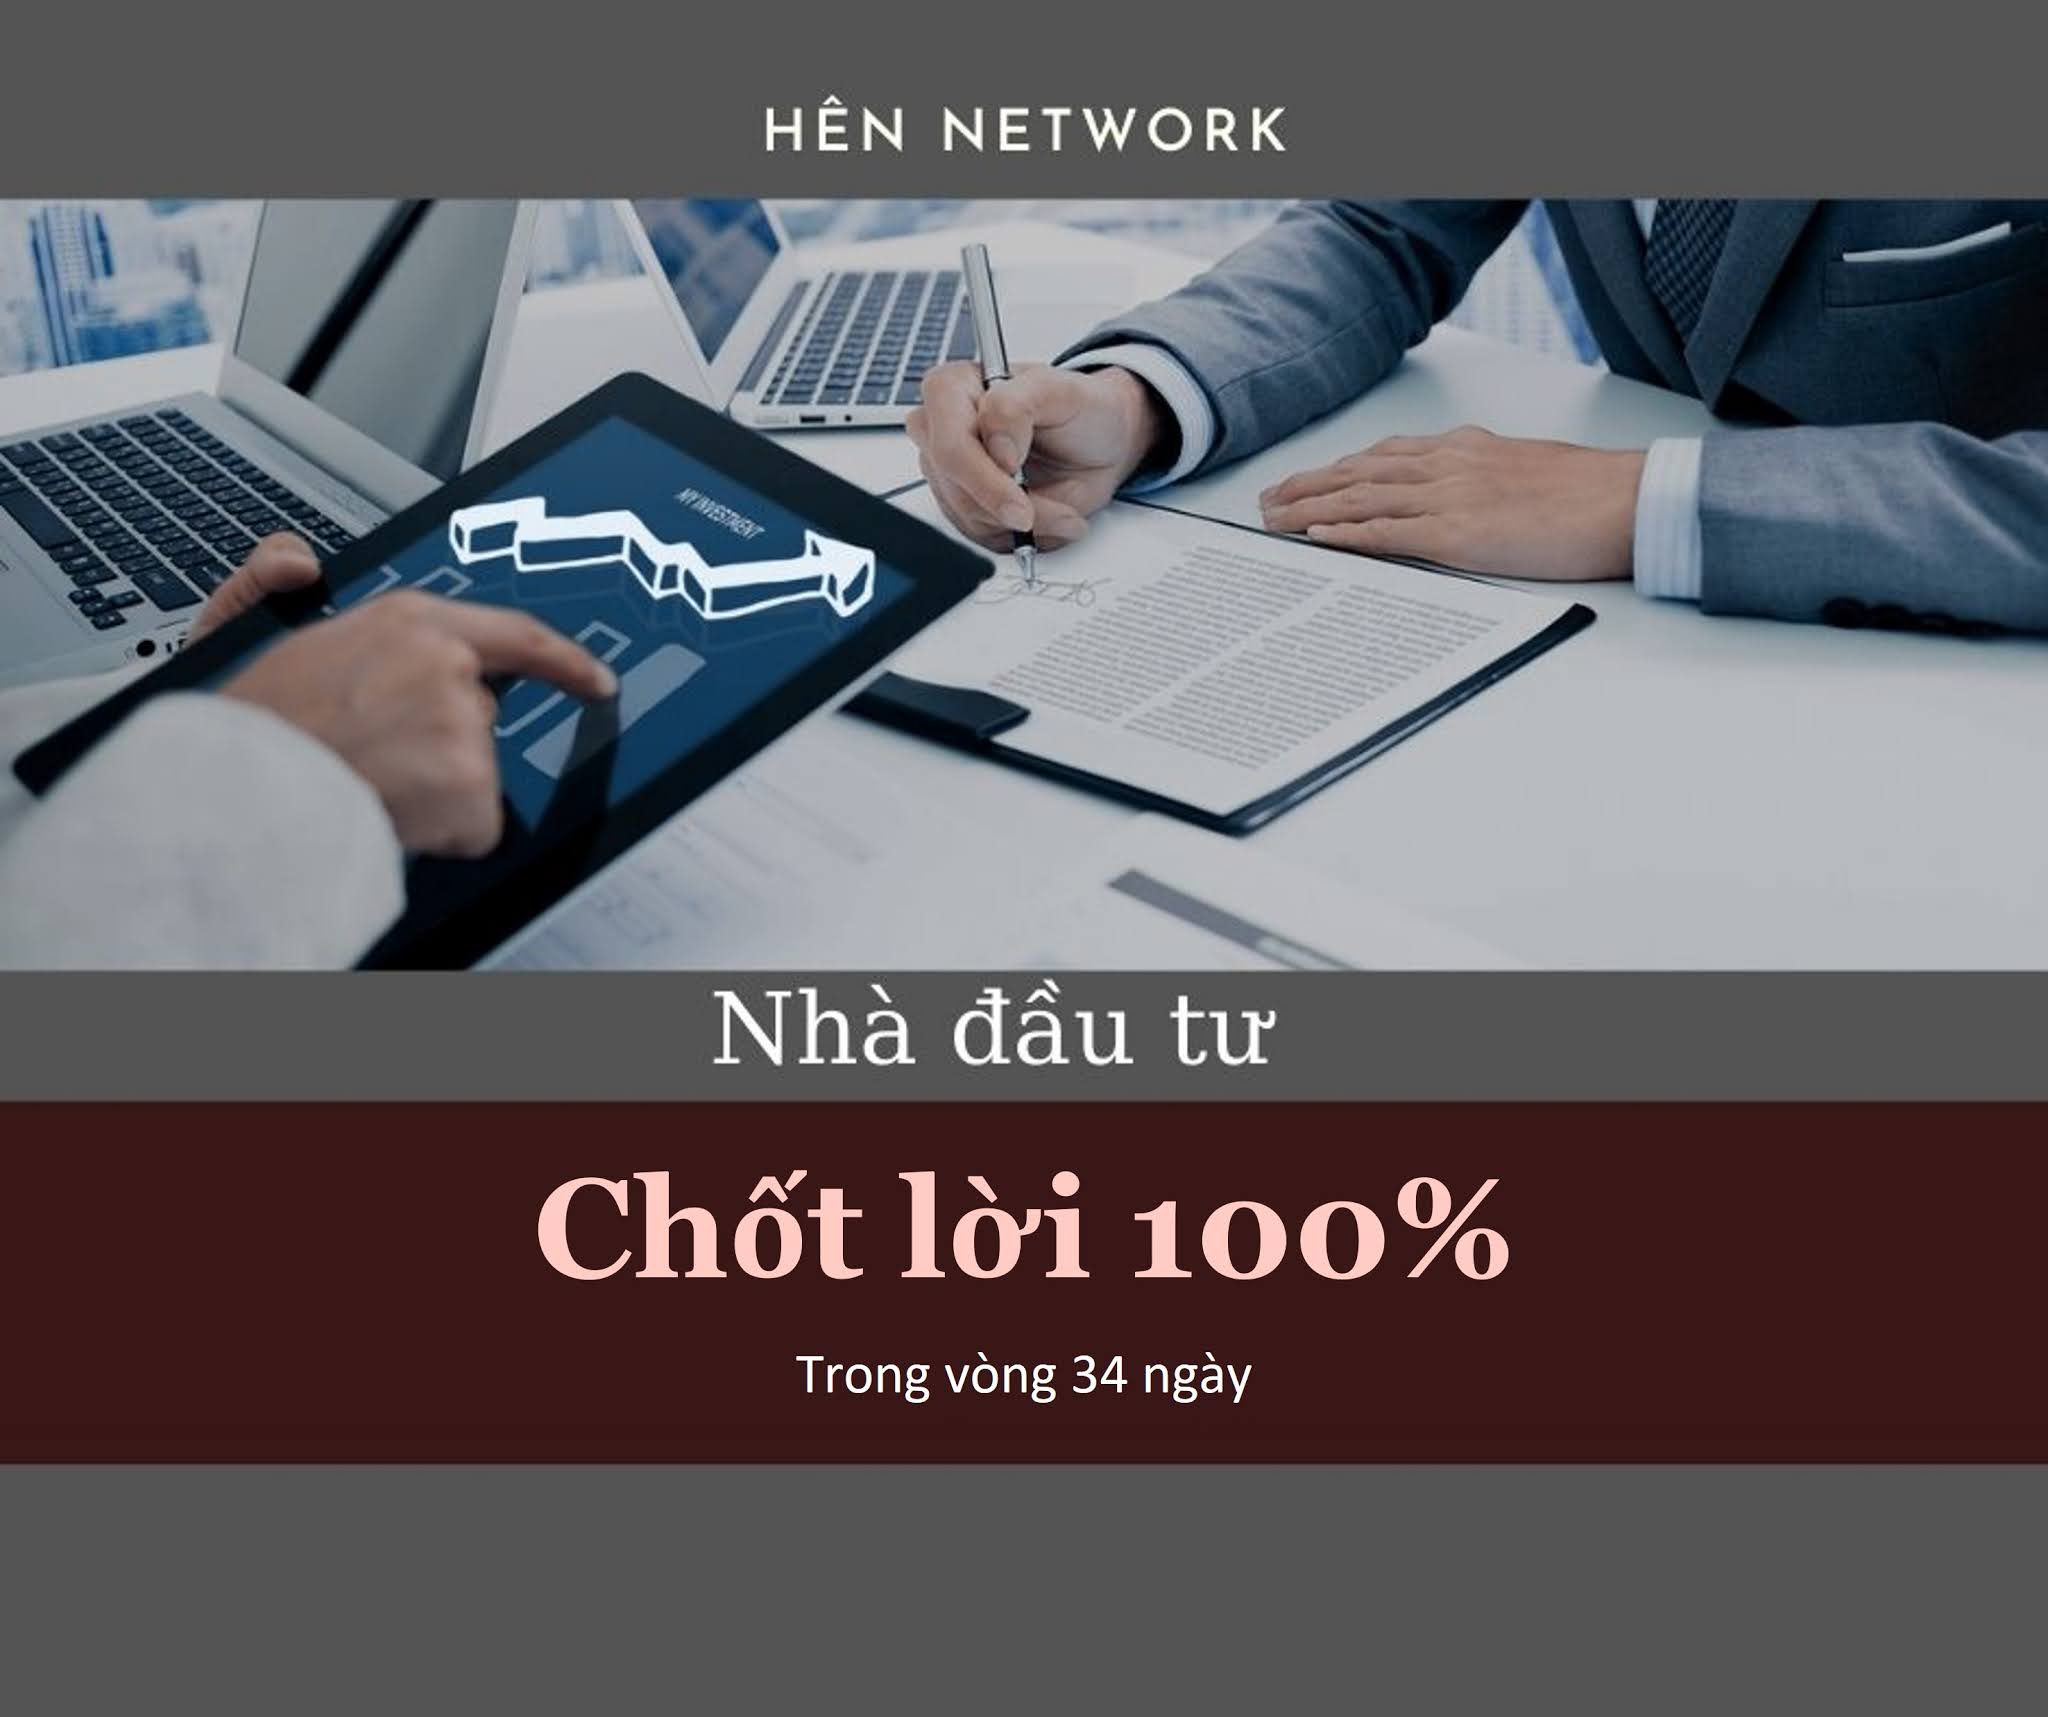 Nhà đầu tư Hên Network chốt lời 100% trong vòng 34 ngày